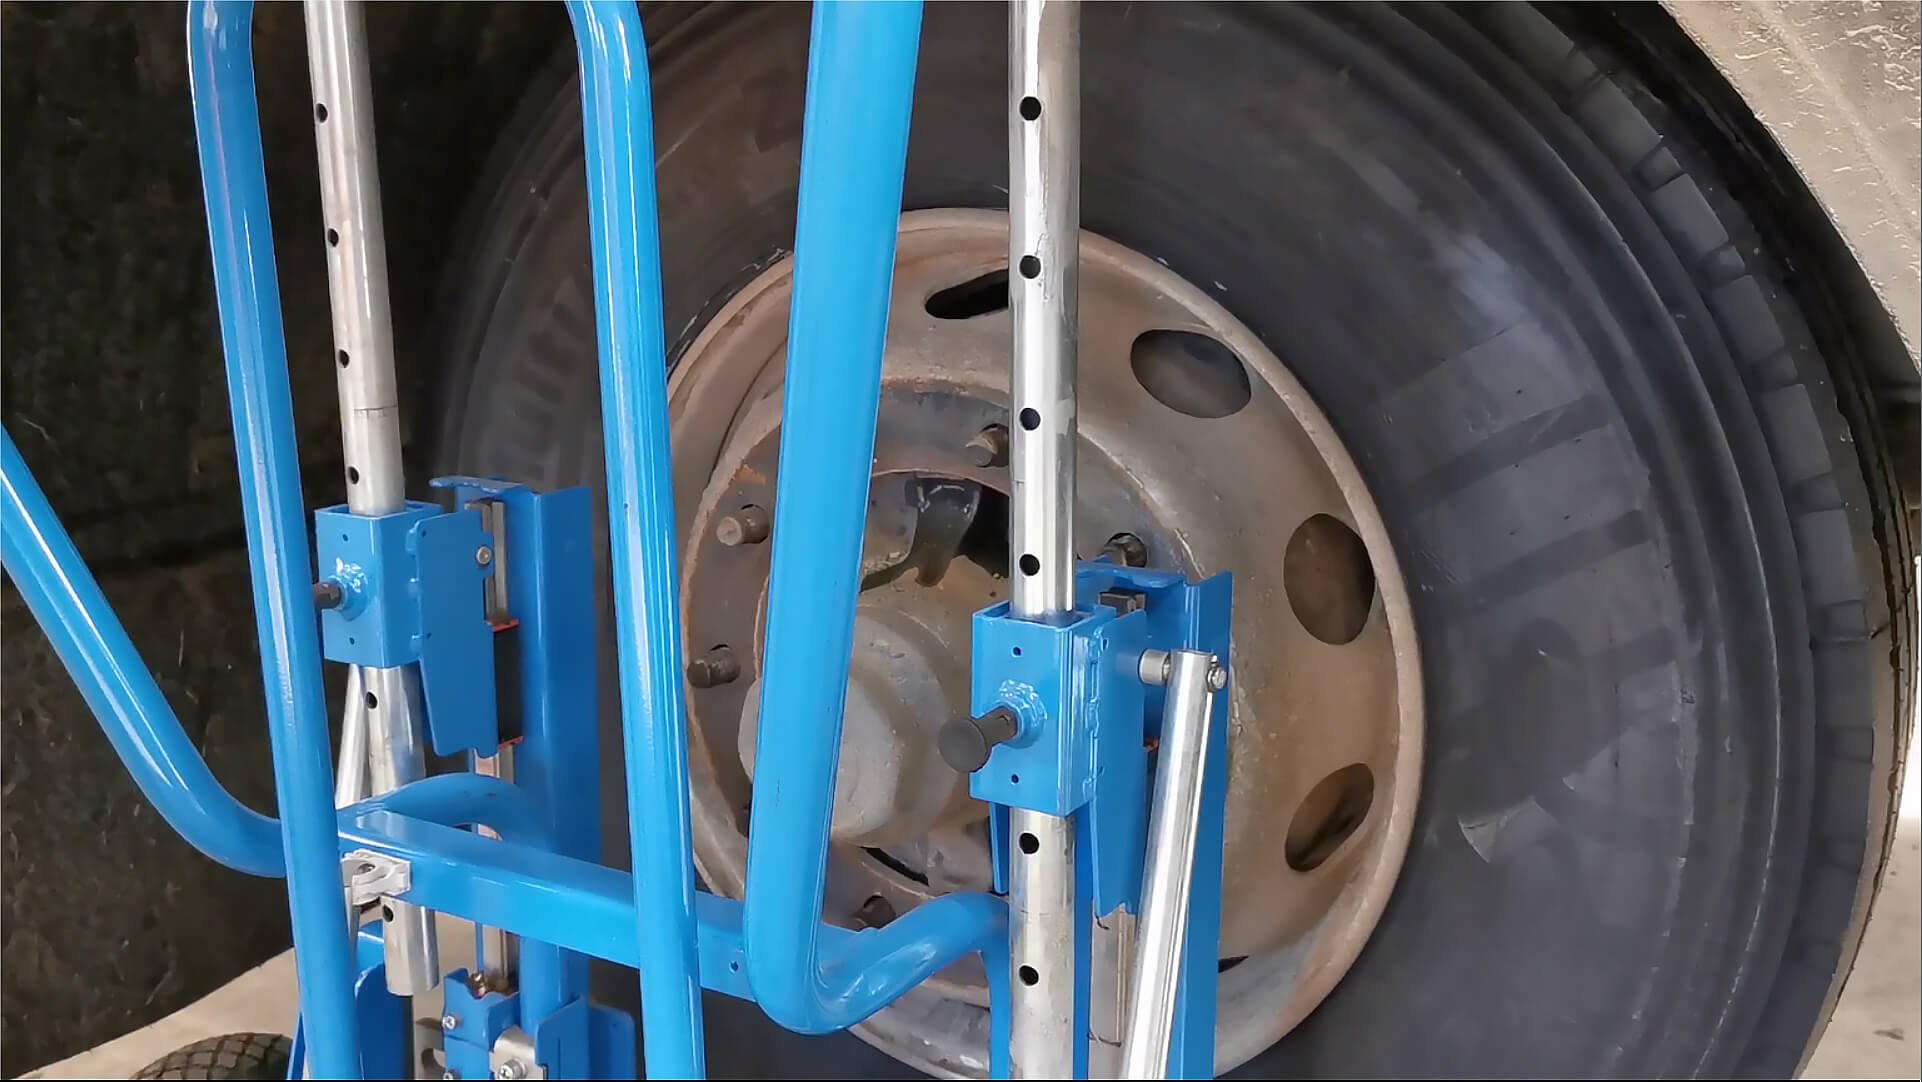 Fácil de girar la rueda a mano para alinear el cubo y los pernos mediante los rodillos incorporados